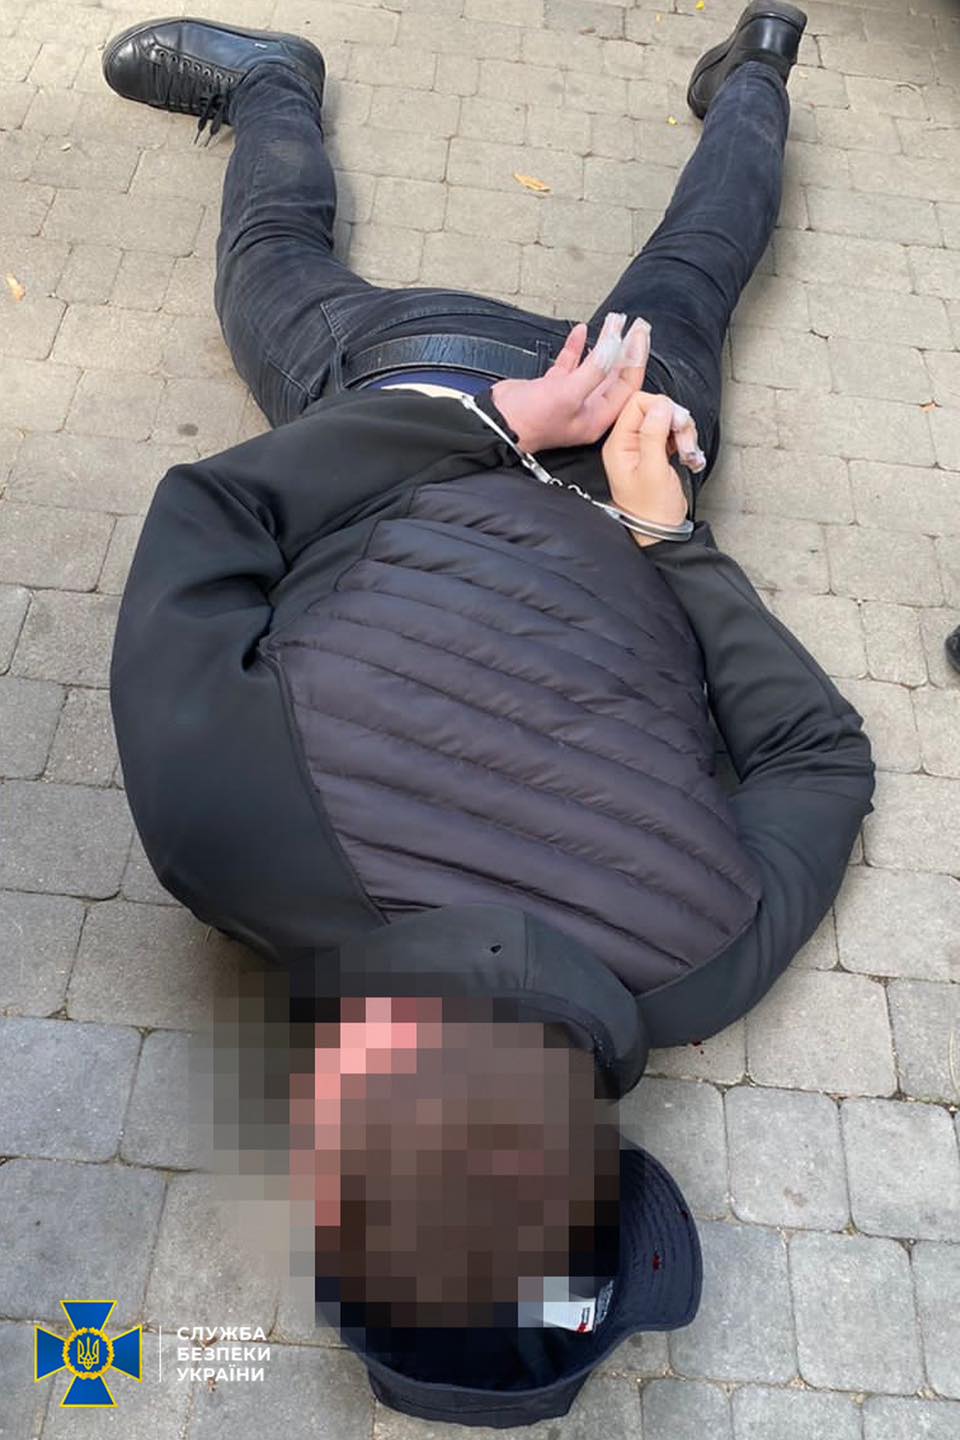 Среди задержанных – действующий правоохранитель Одесской области: СБУ обезвредила группировку подсанкционного «вора в законе» по прозвищу «Антимос»